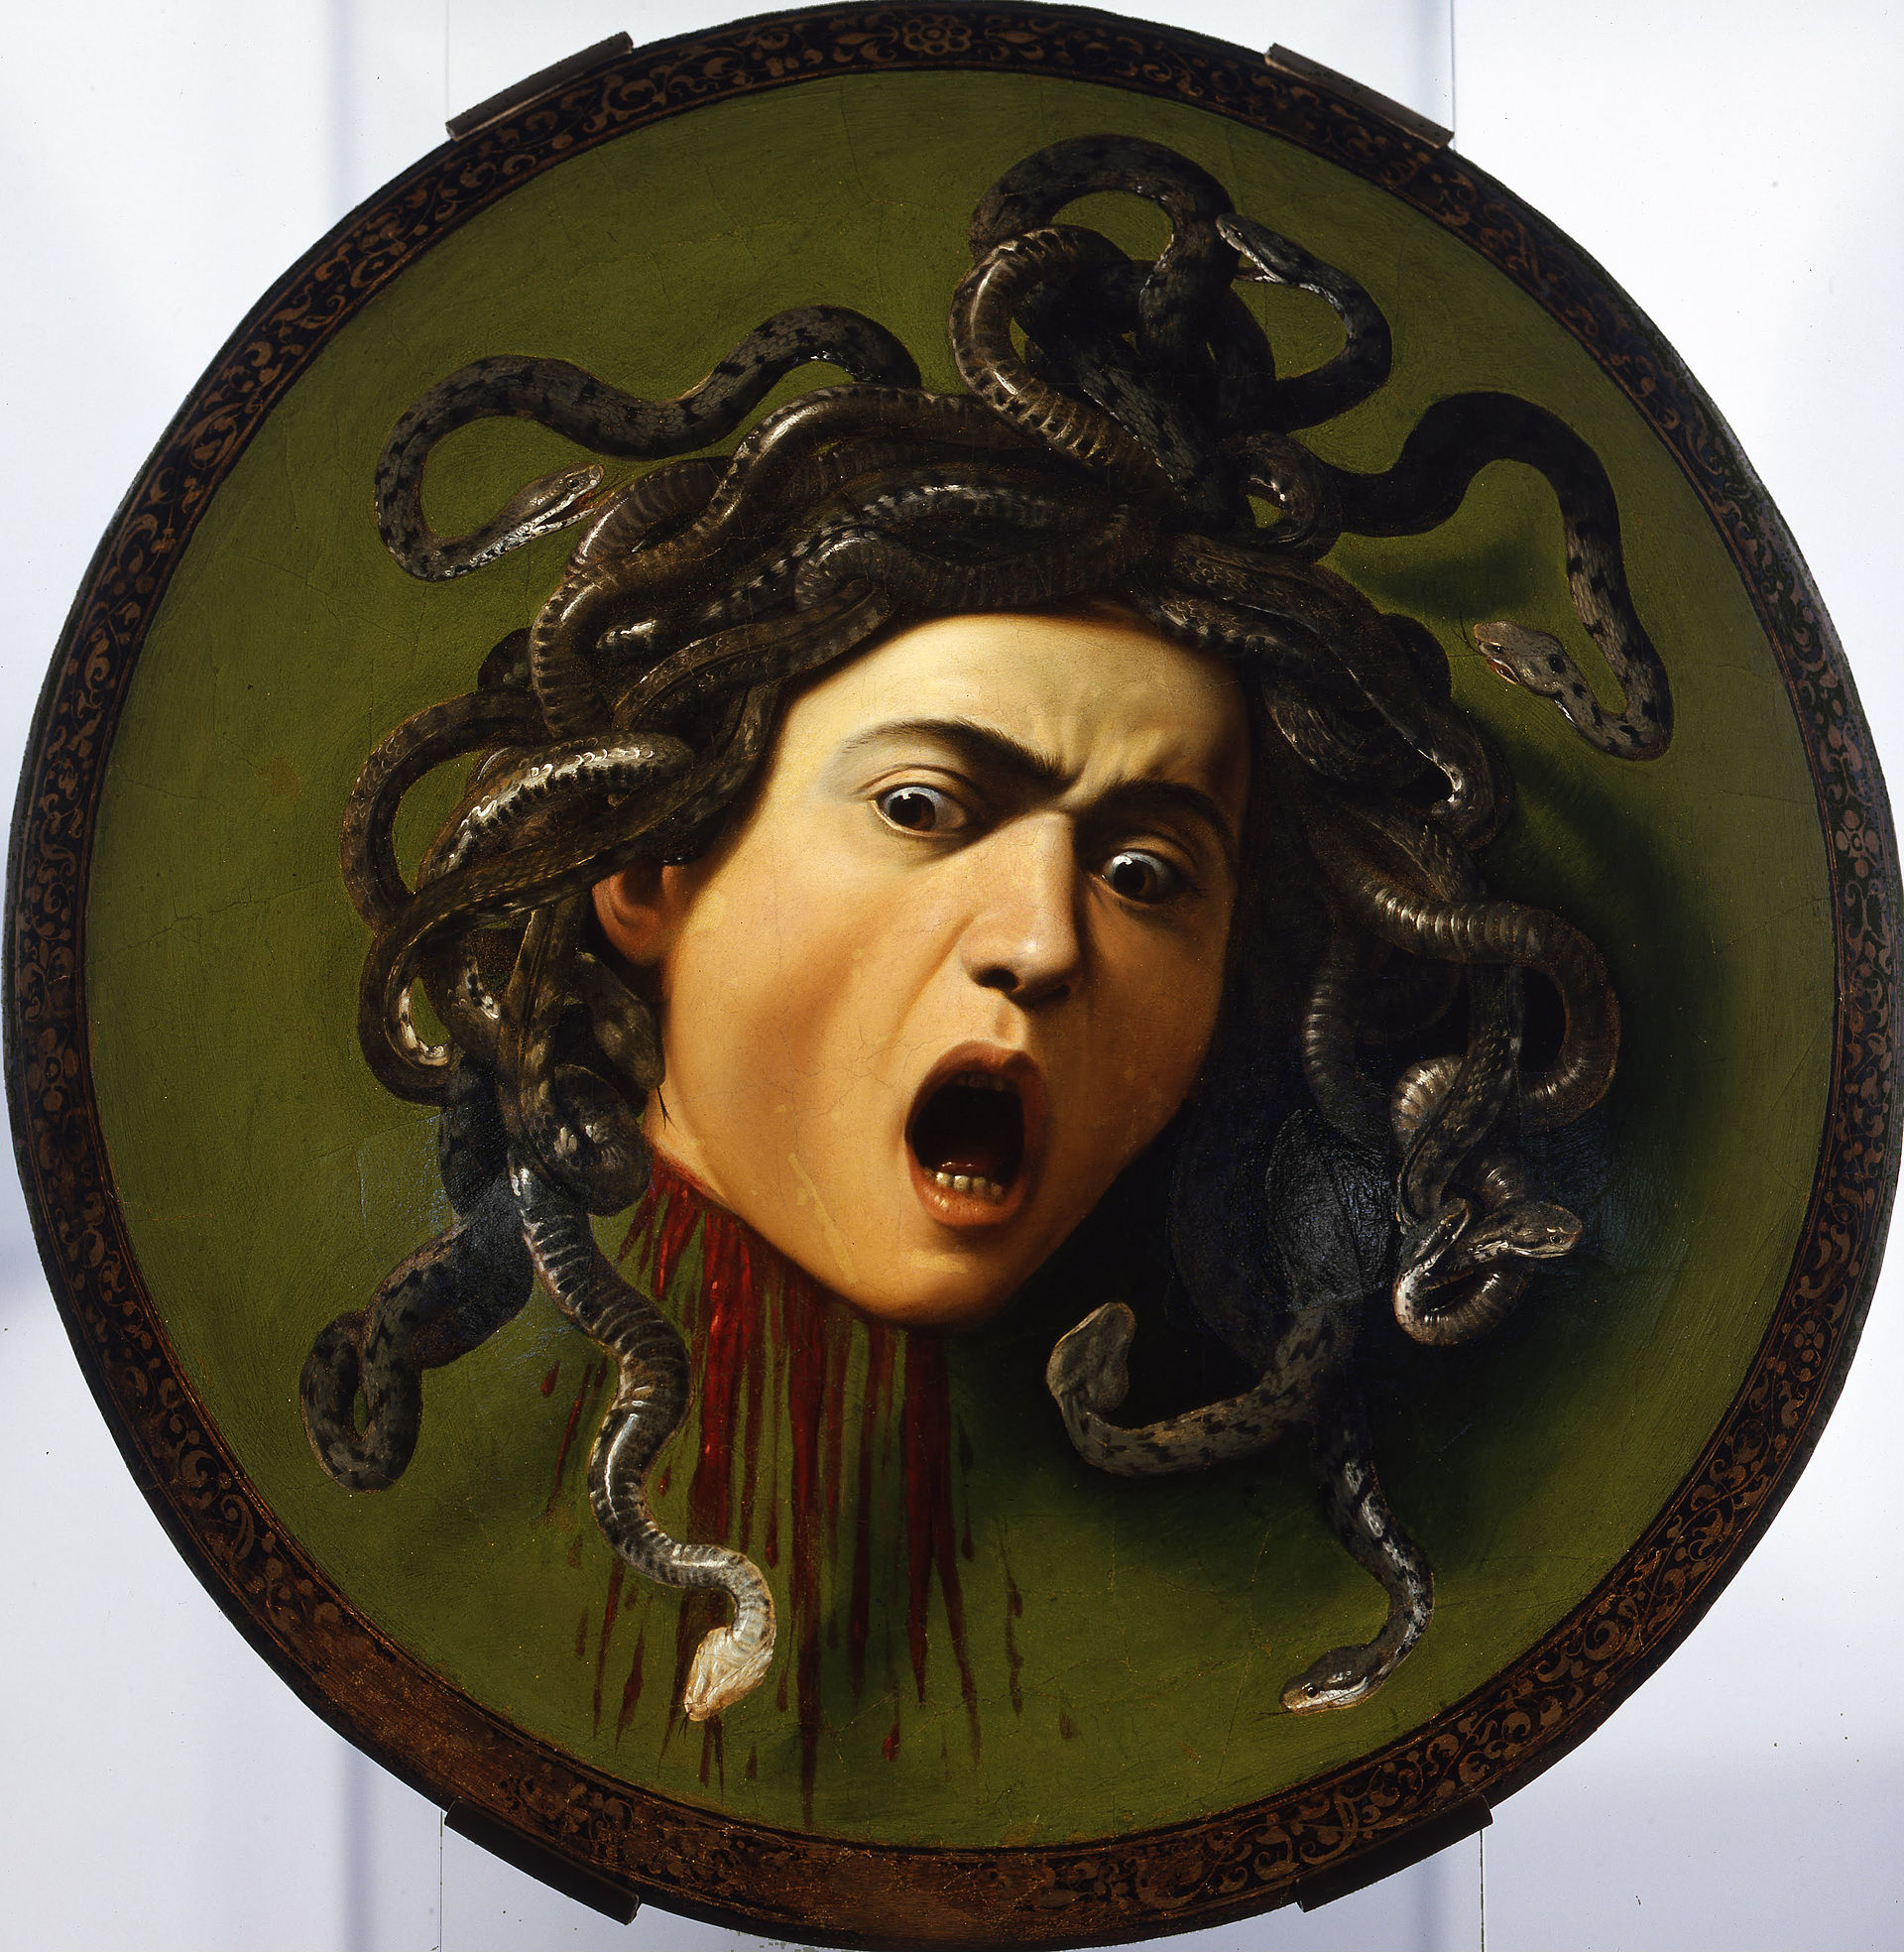 The original Medusa by Caravaggio